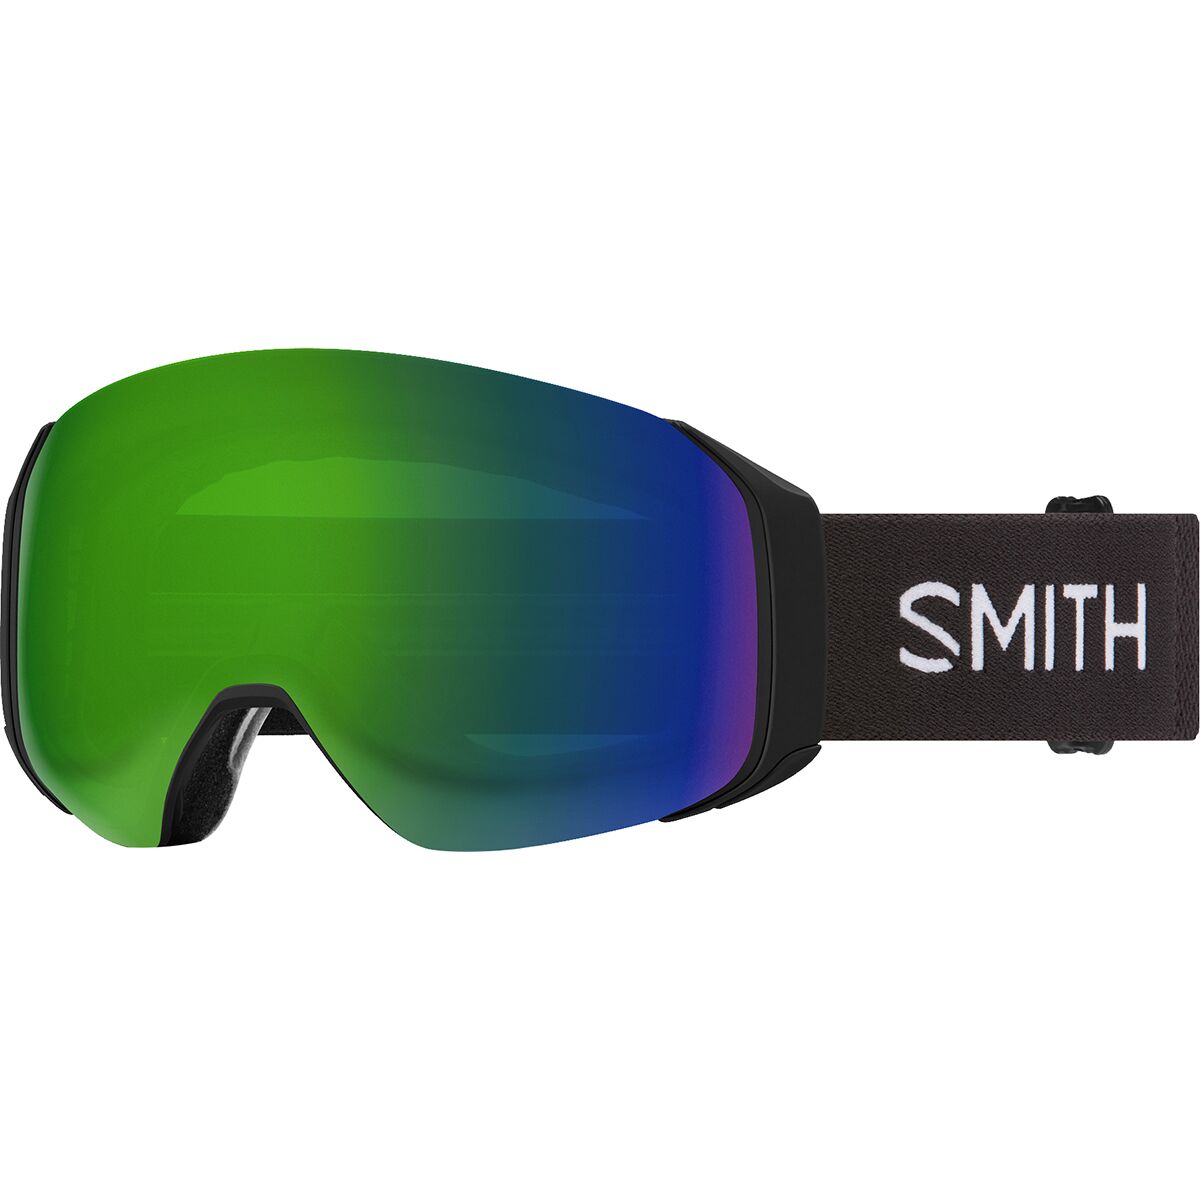 Photos - Ski Goggles Smith 4D MAG S Goggles 